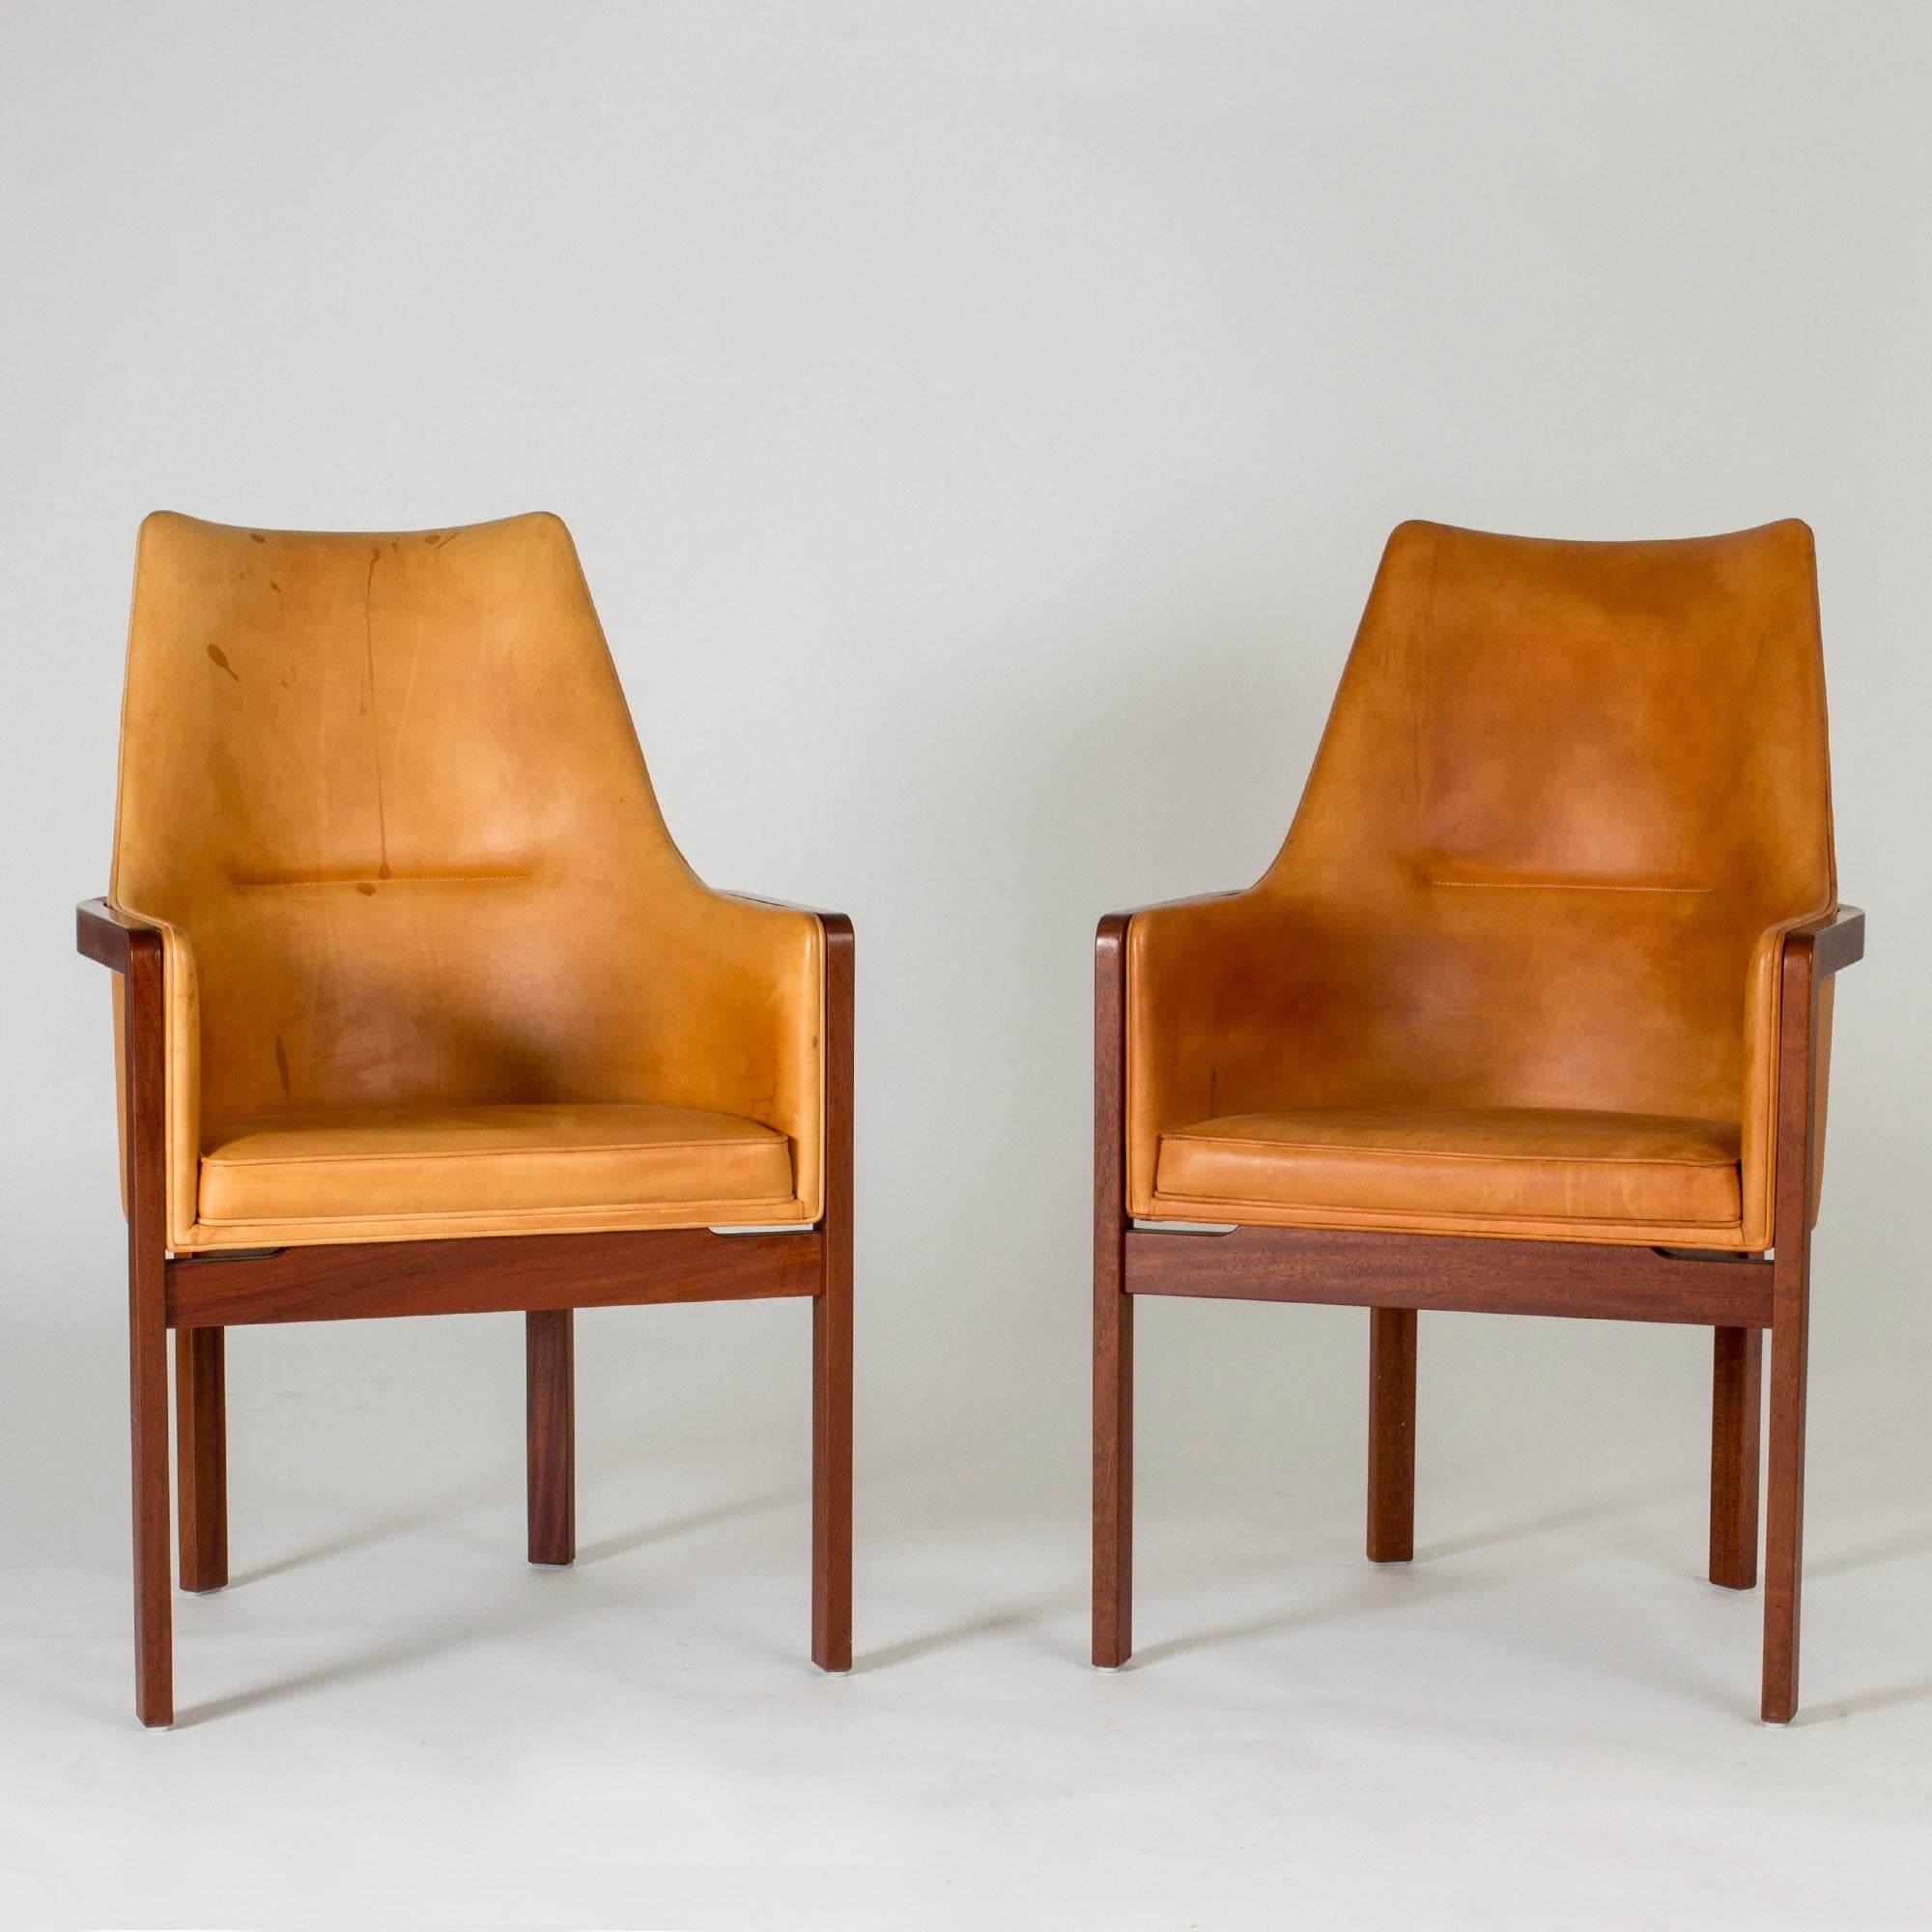 Paire d'élégants fauteuils par Bernt Petersen, avec des cadres en bois de rose et des sièges et dossiers confortables en cuir naturel. Des lignes douces et des matériaux joliment contrastés. Cuir en très bon état, mais avec un peu de patine.